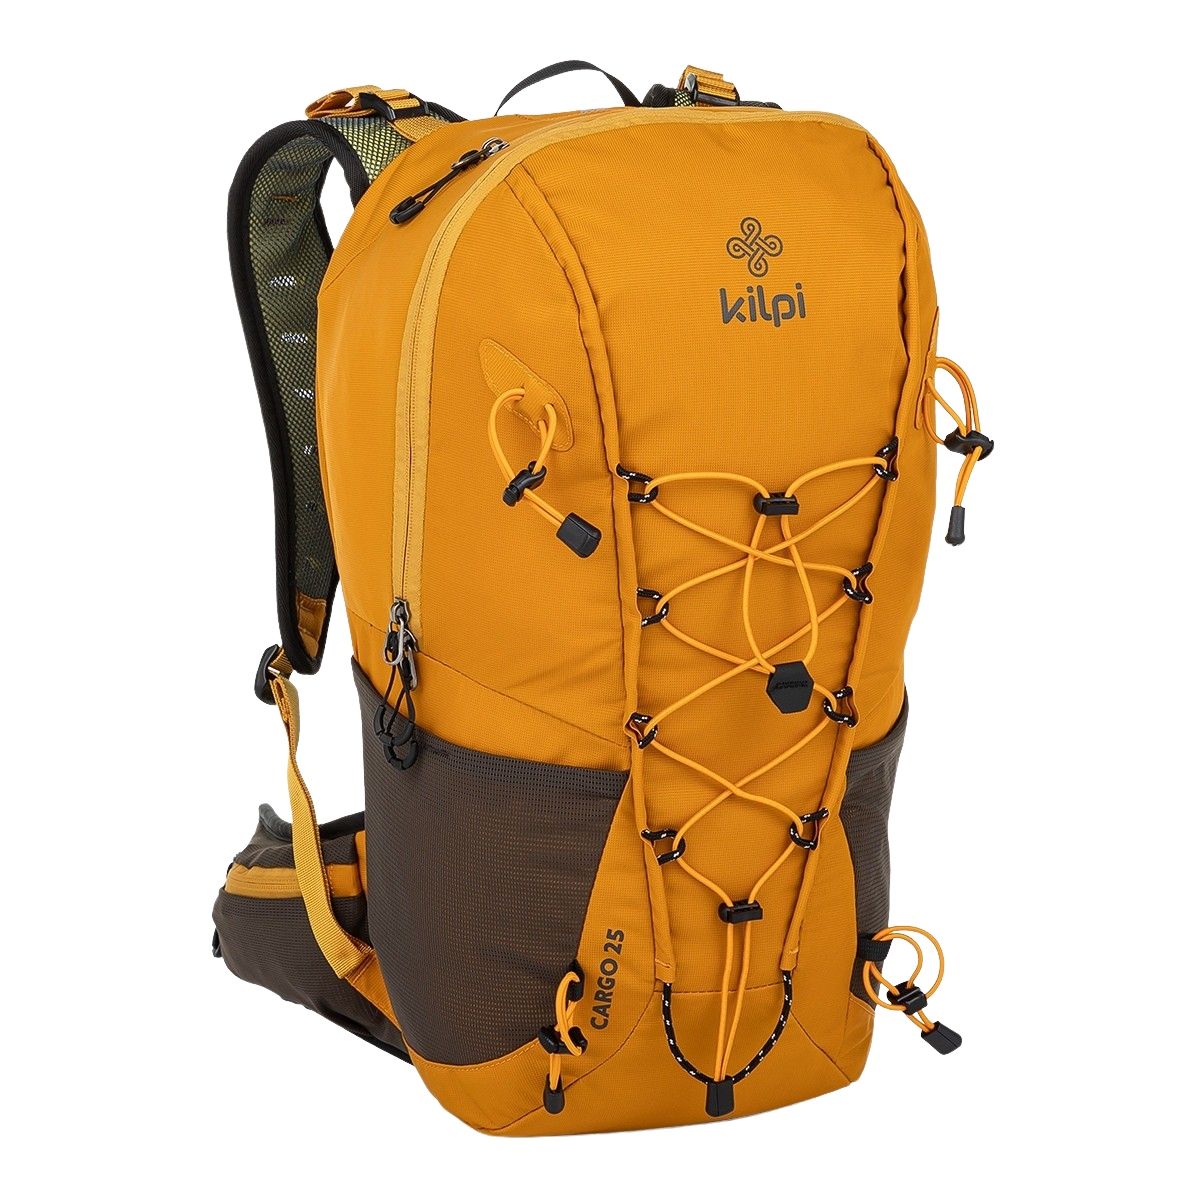 Brug Kilpi Cargo, rygsæk, 25L, gul til en forbedret oplevelse